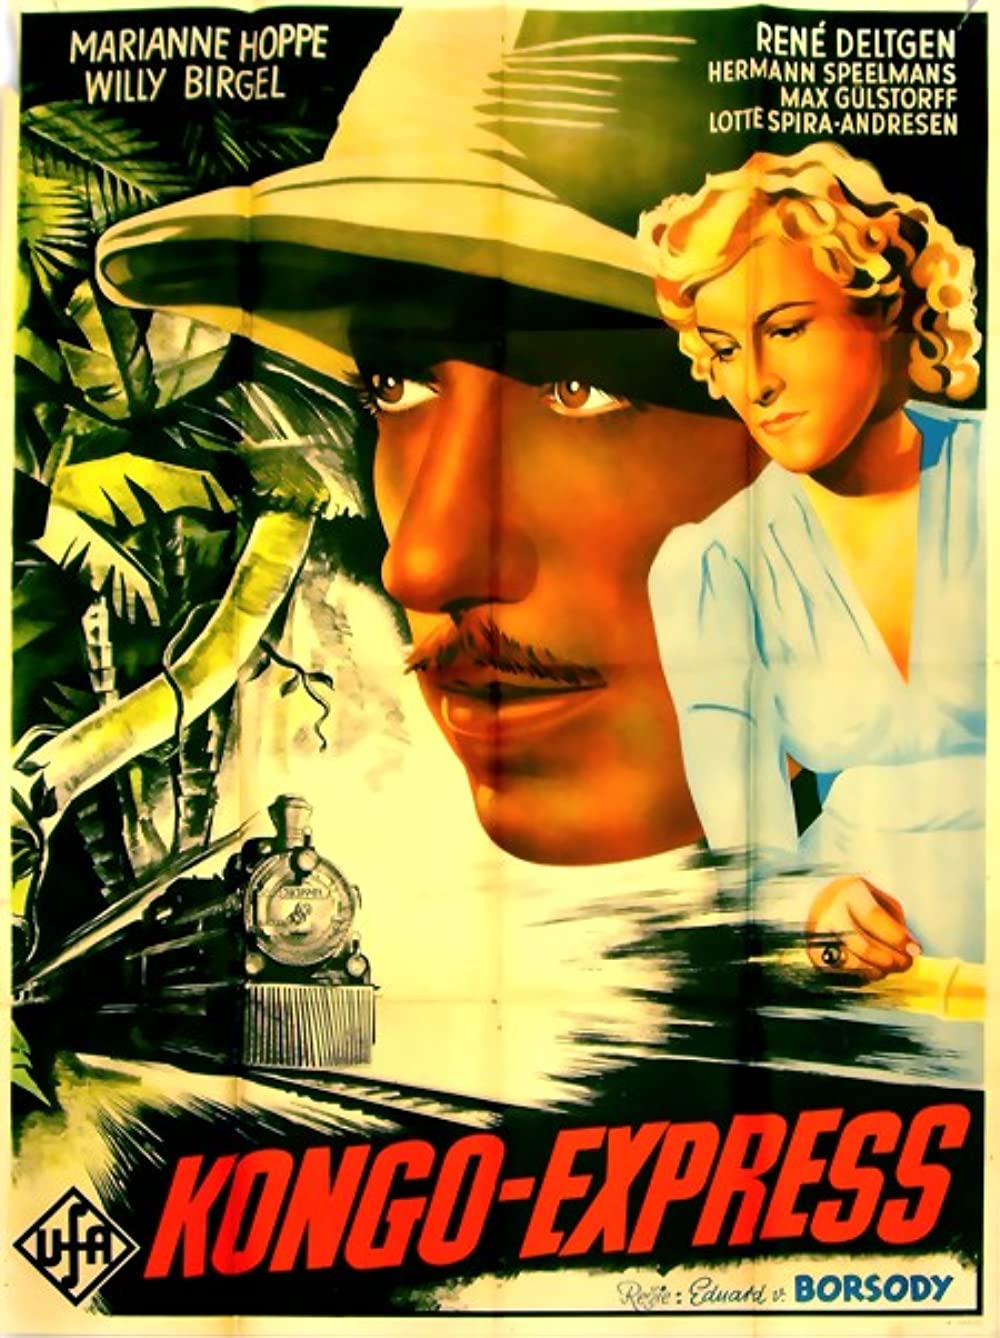 Filmbeschreibung zu Kongo-Express